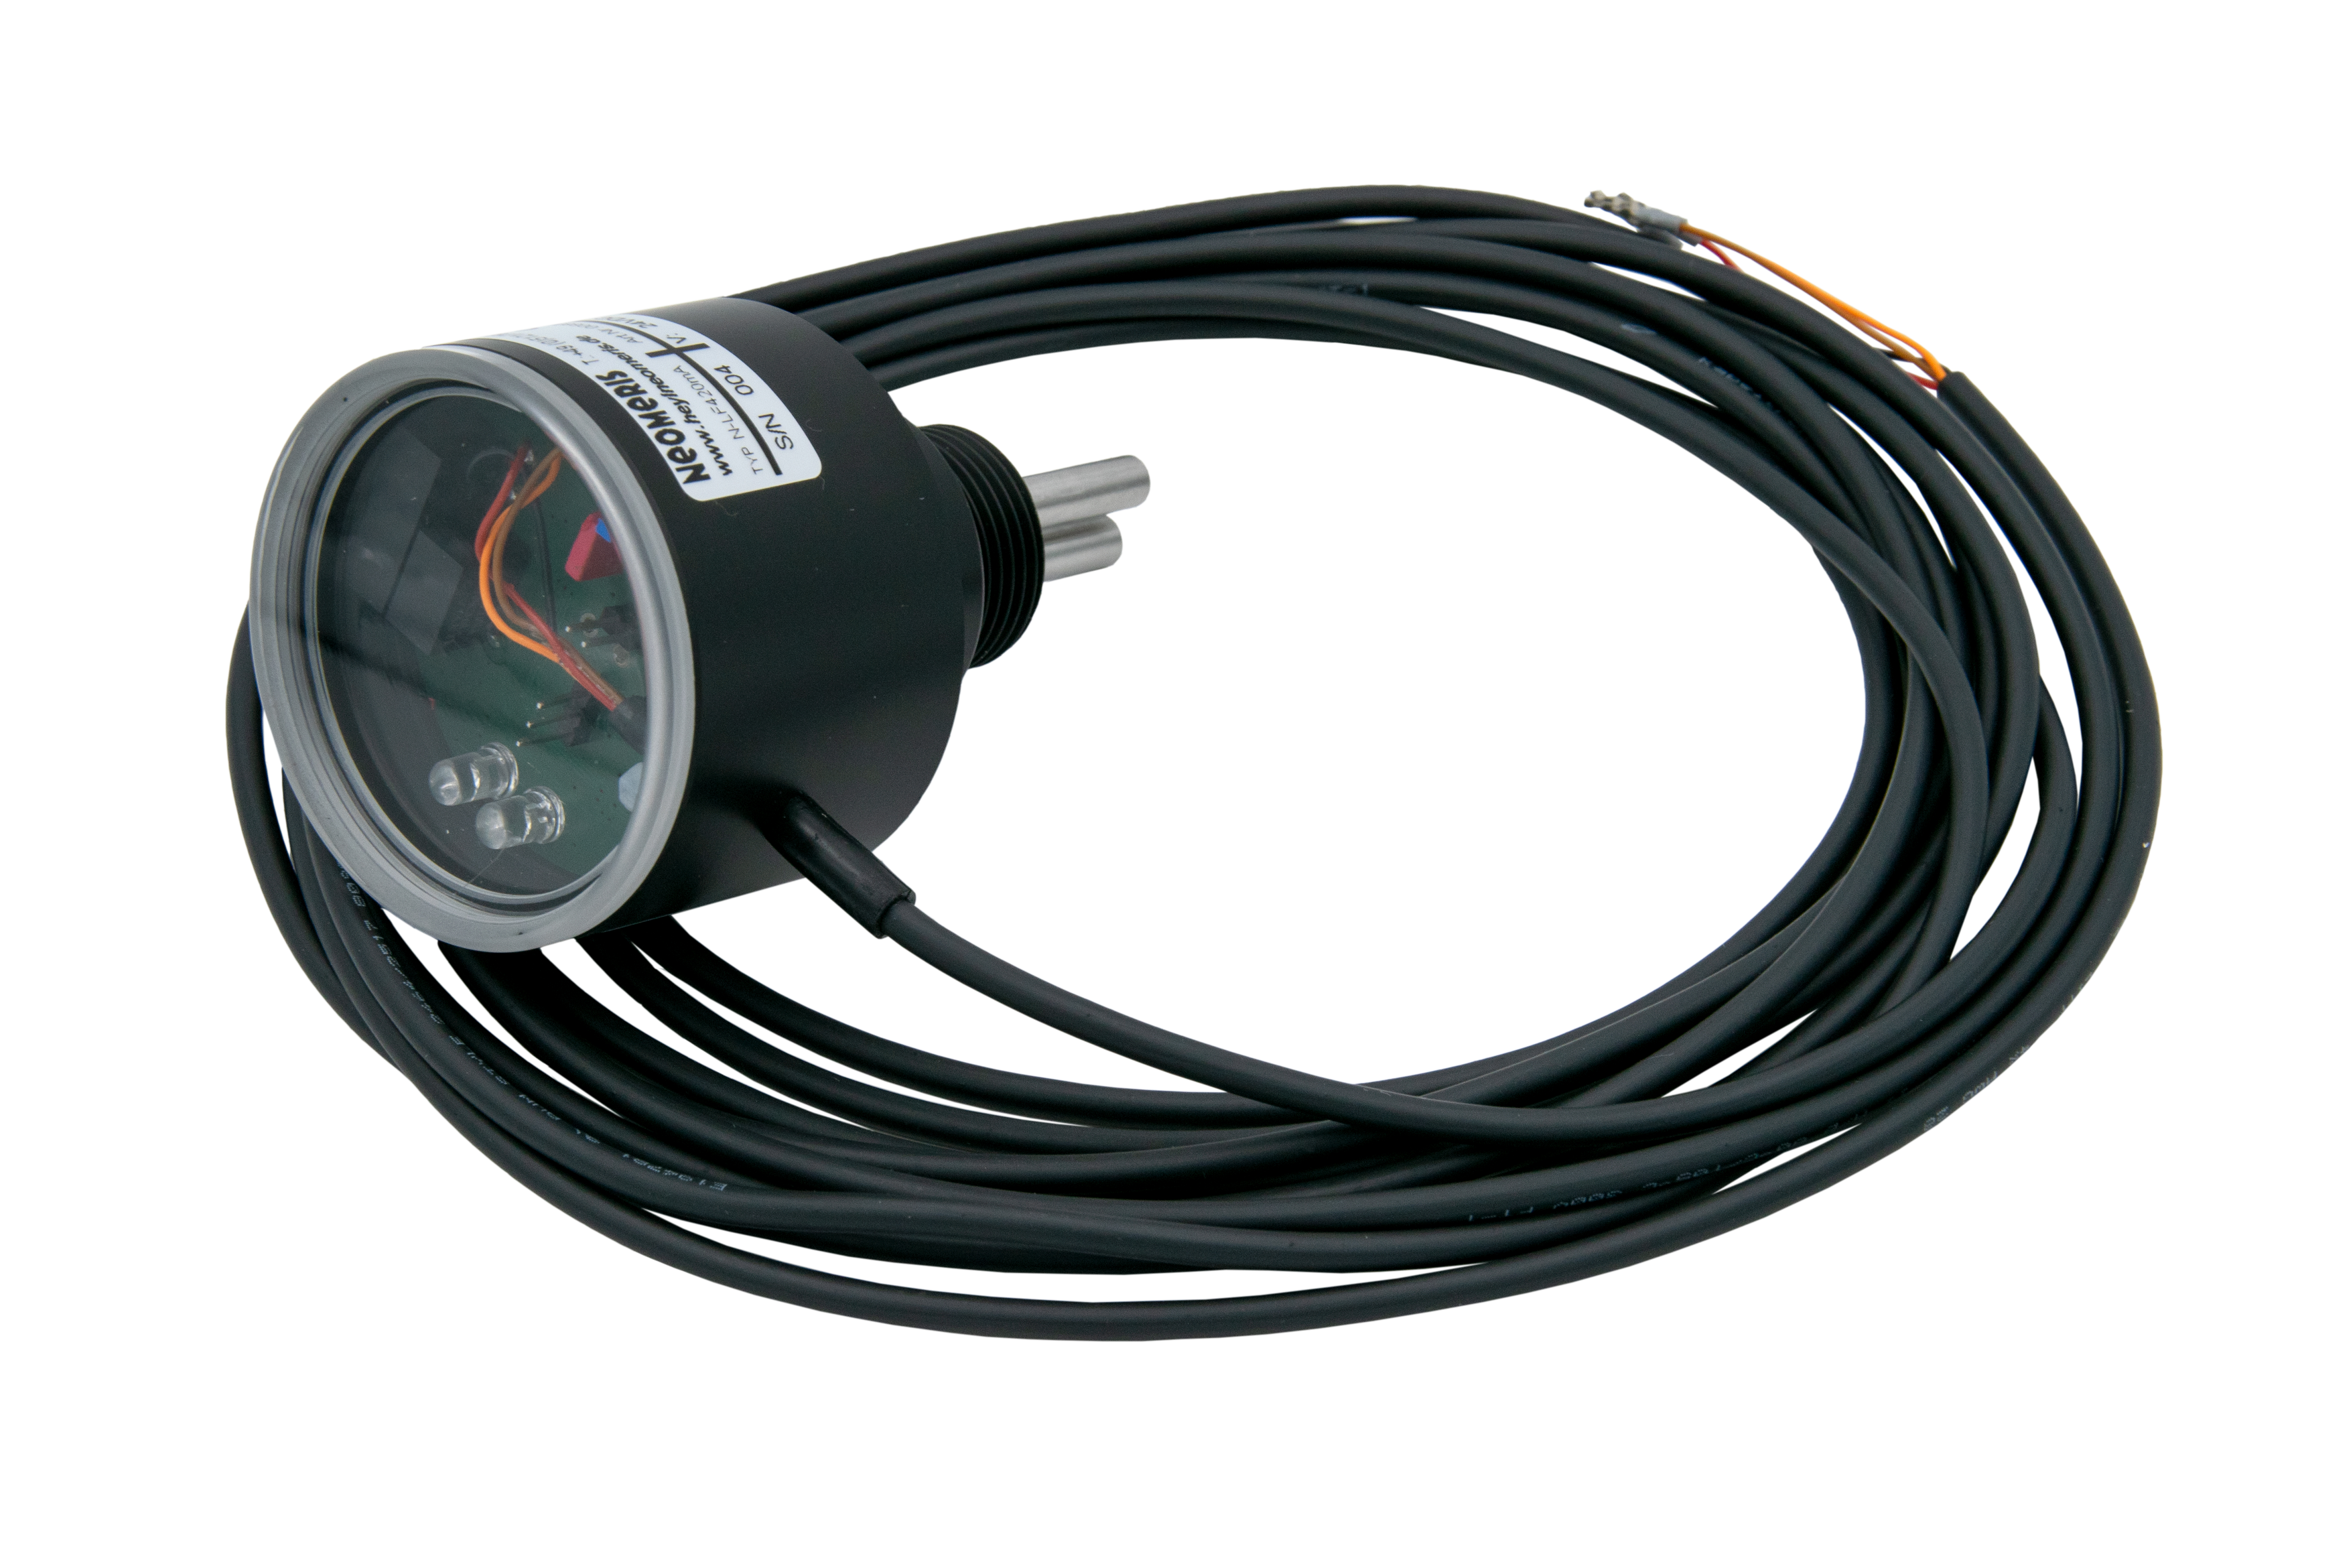 N-LF420 freier Messbereich - Leitfähigkeitsmessgerät mit 4-20mA Ausgang und Messbereich gemäß Ihren Anforderungen, LED Anzeige, 3/4 Zoll Einschraubgewinde